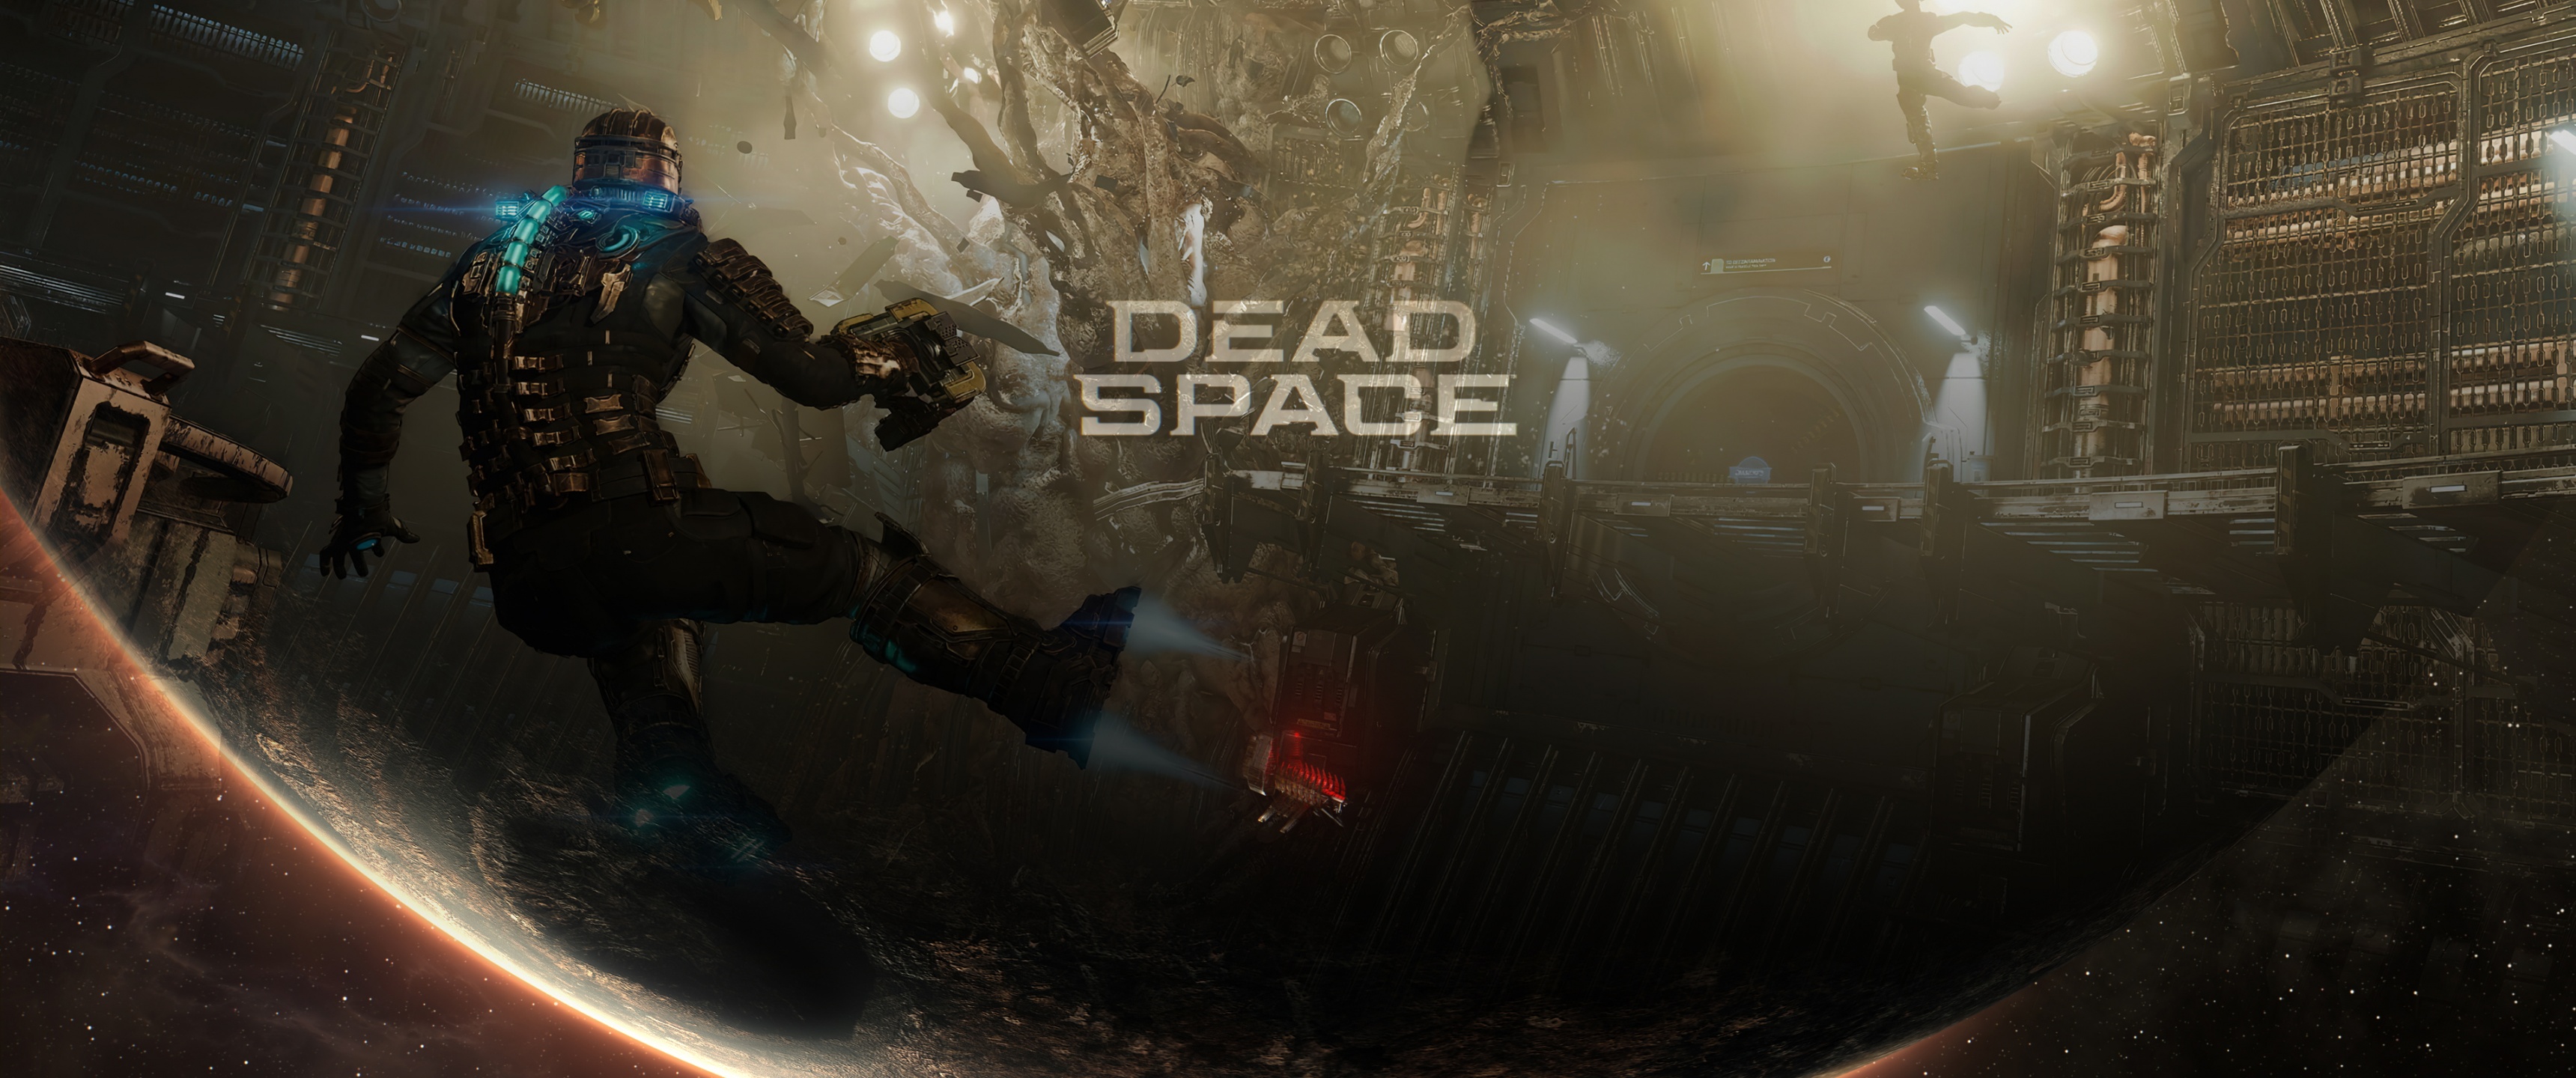 Video Game Dead Space 2023 4k Ultra HD Wallpaper